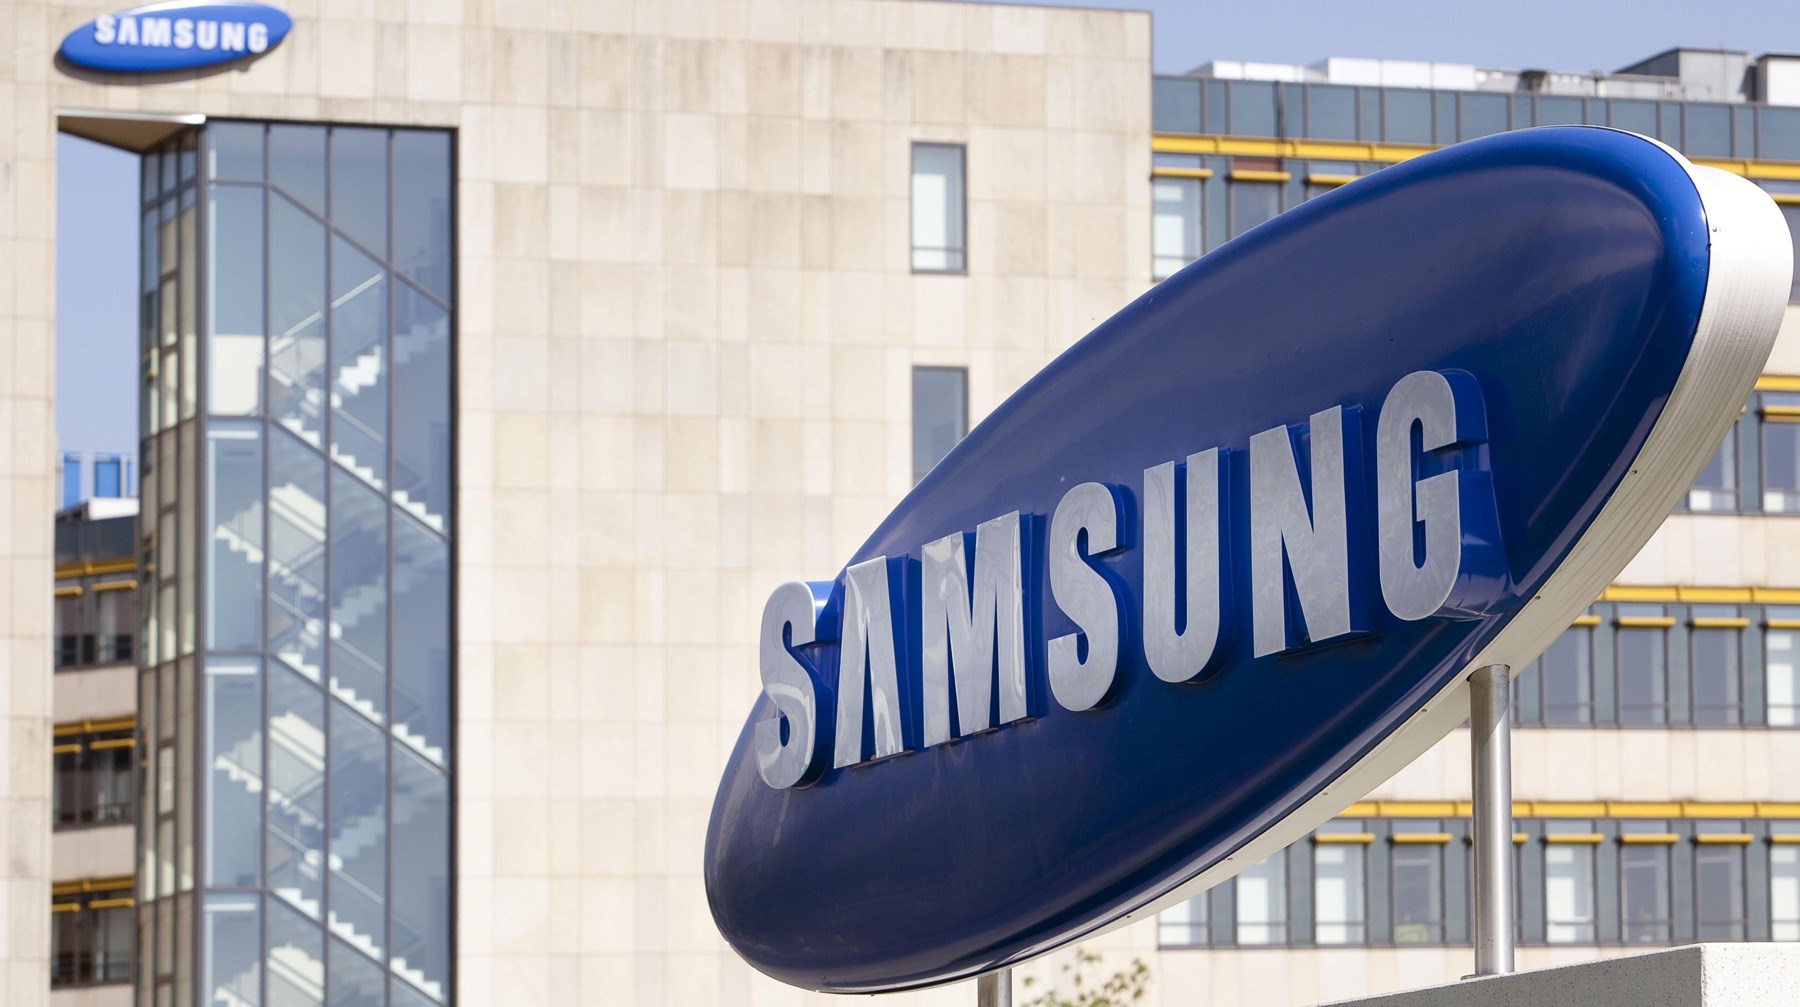 Samsung'un varisleri 11 milyar dolarlık miras vergisini düşürmek için 23 bin sanat eserini bağışlayacak